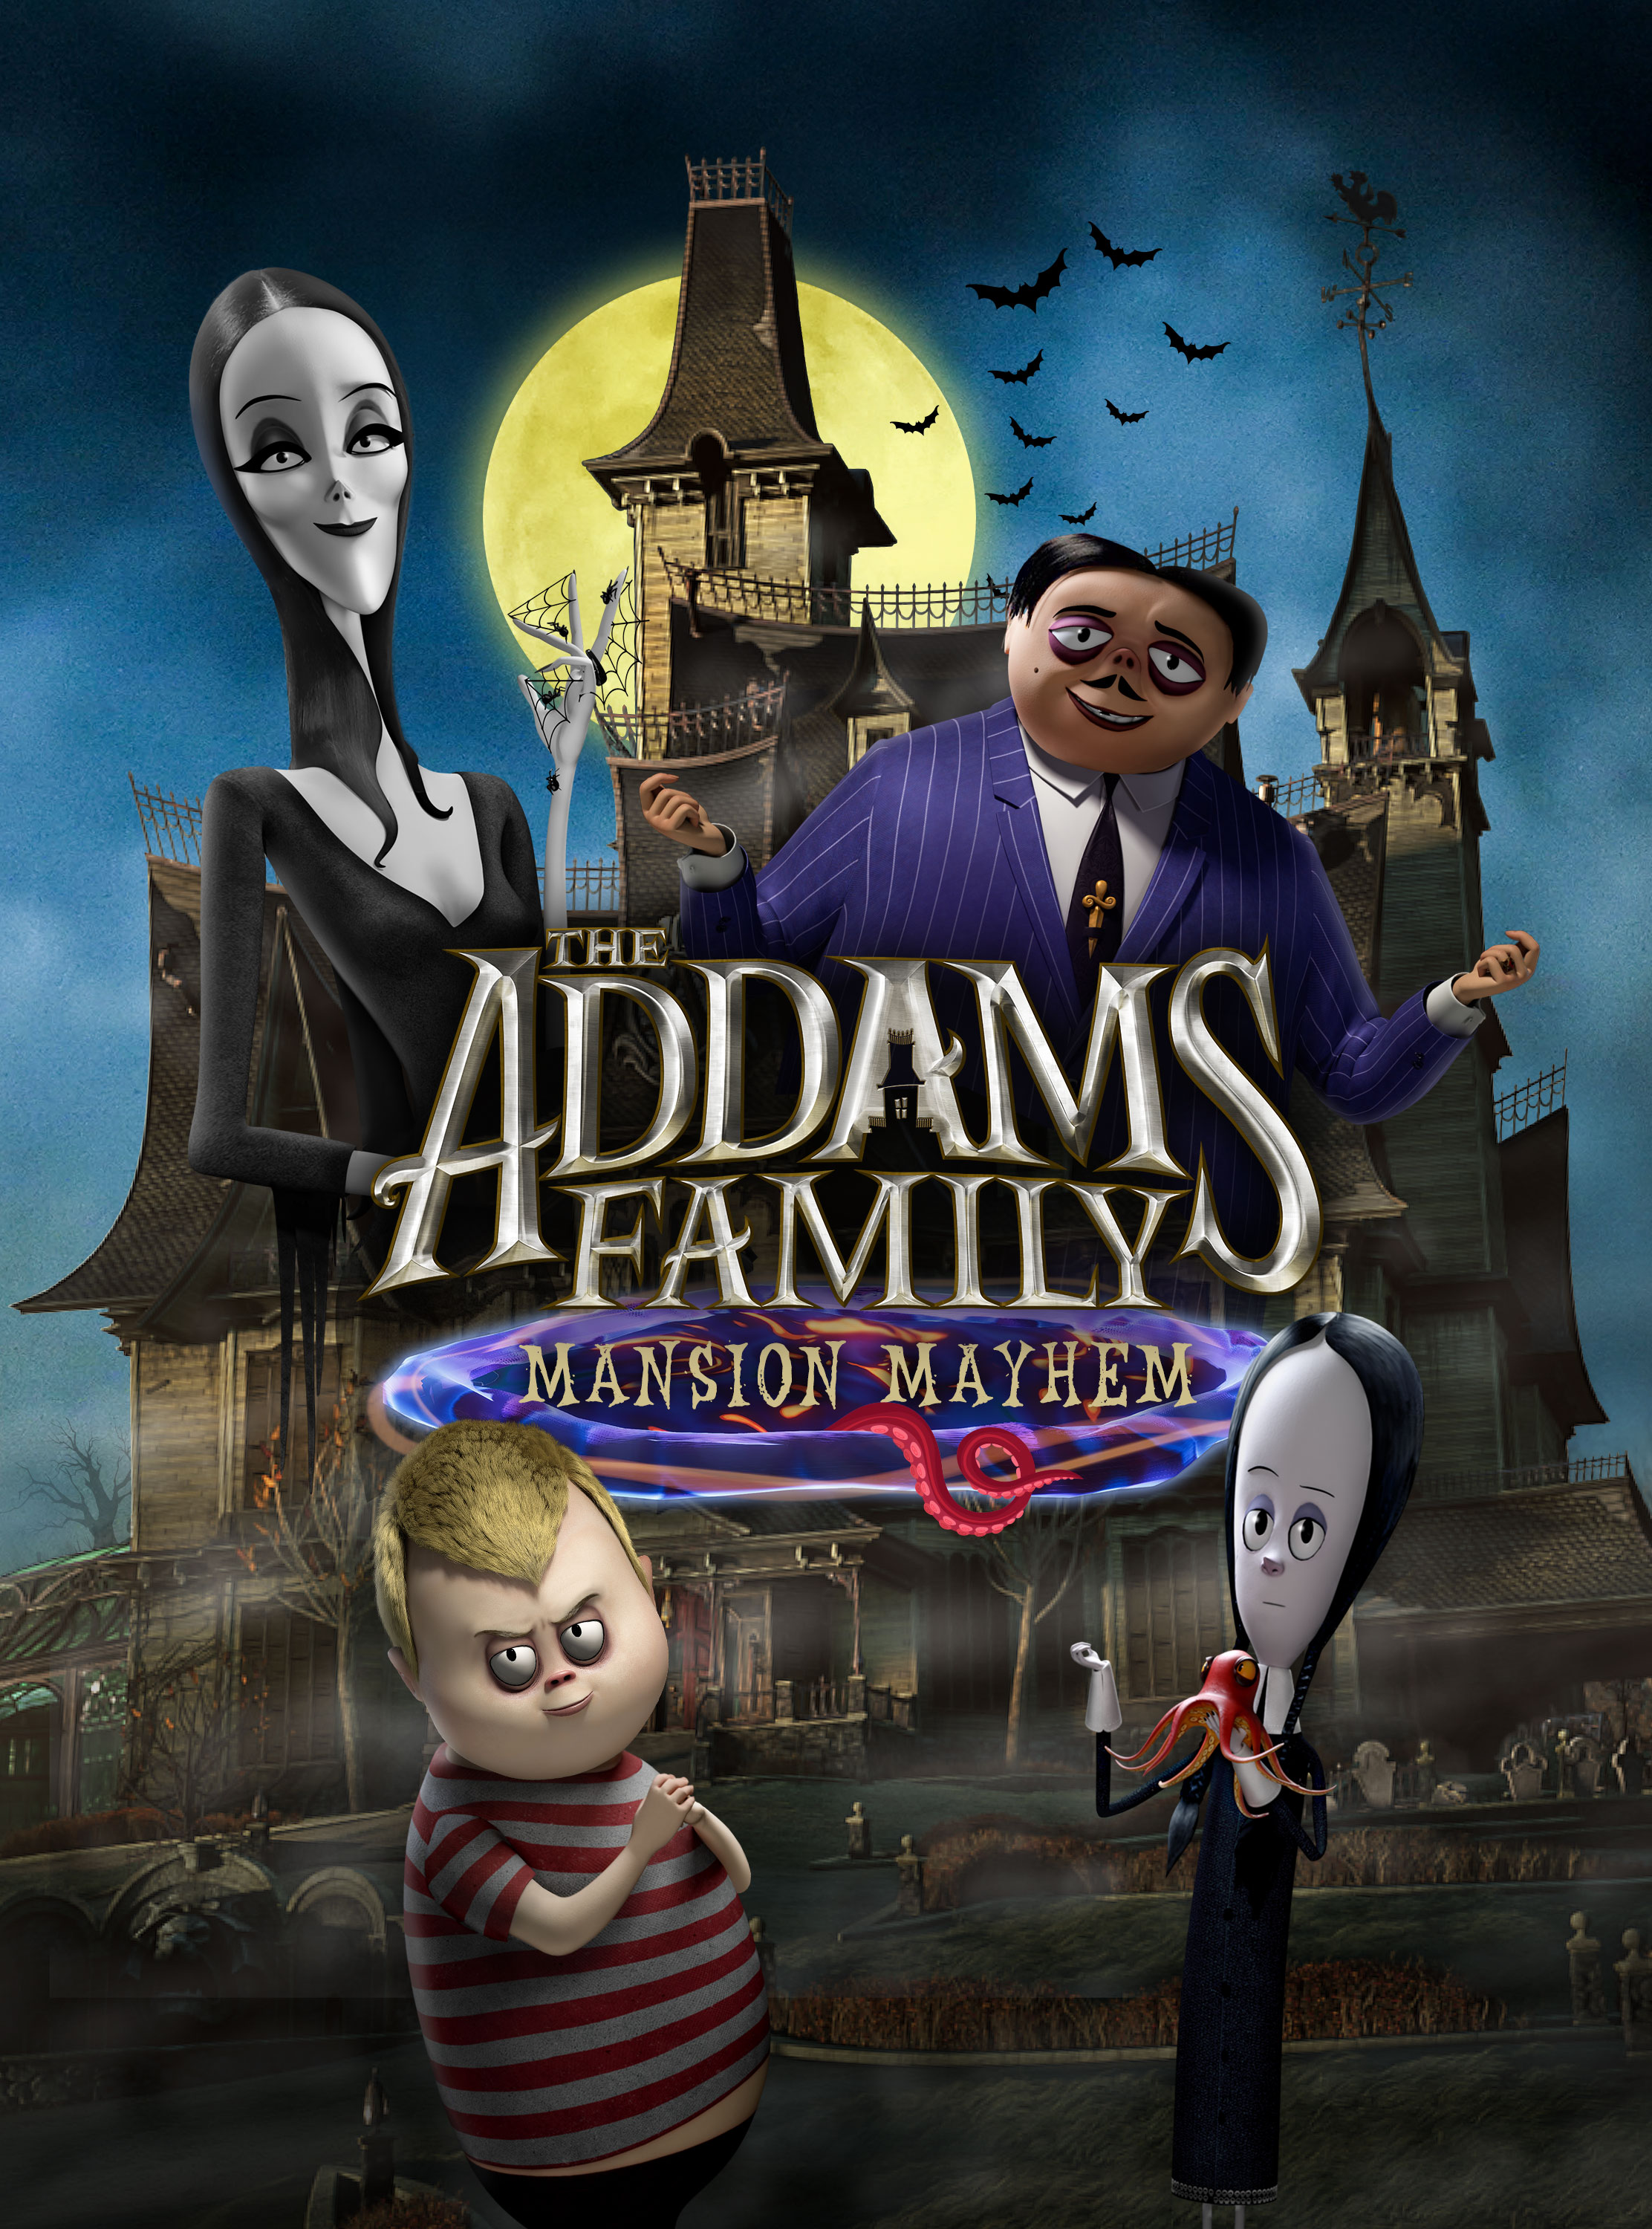 La Famille Addams : Panique au Manoir sur PS4 : les offres